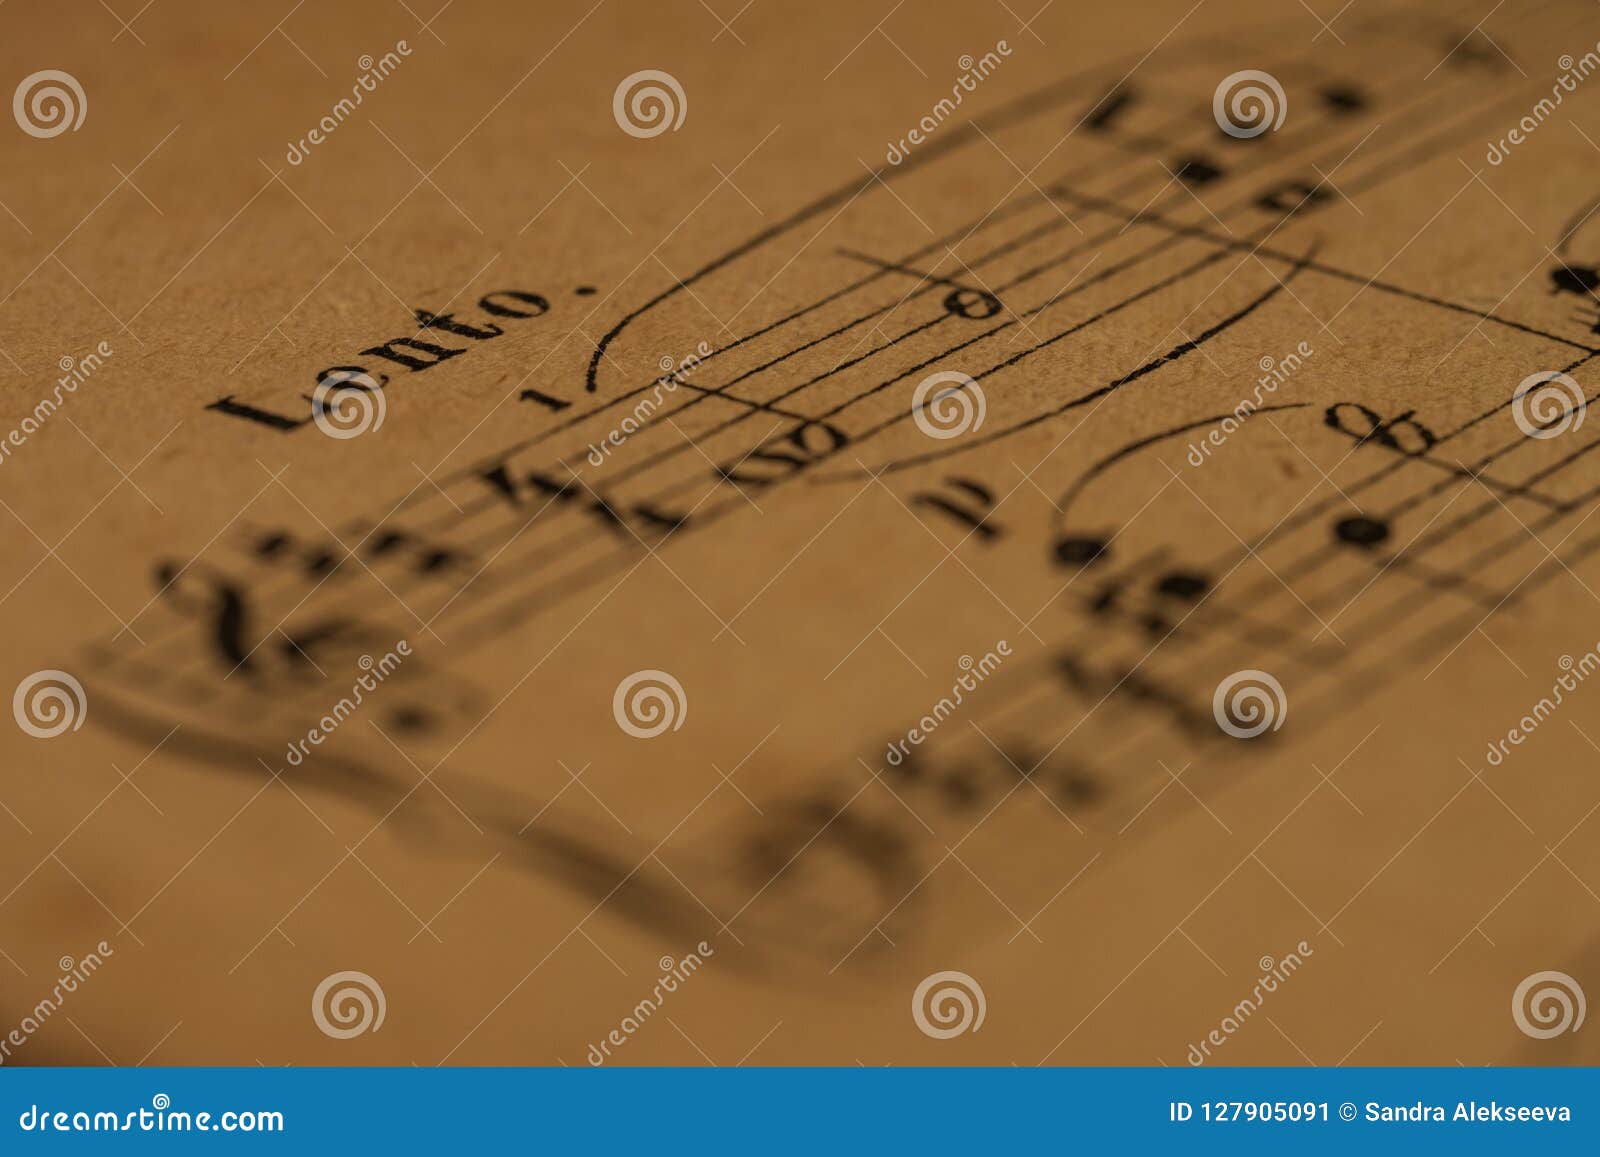 a lento tempo mark in a classical print piano score